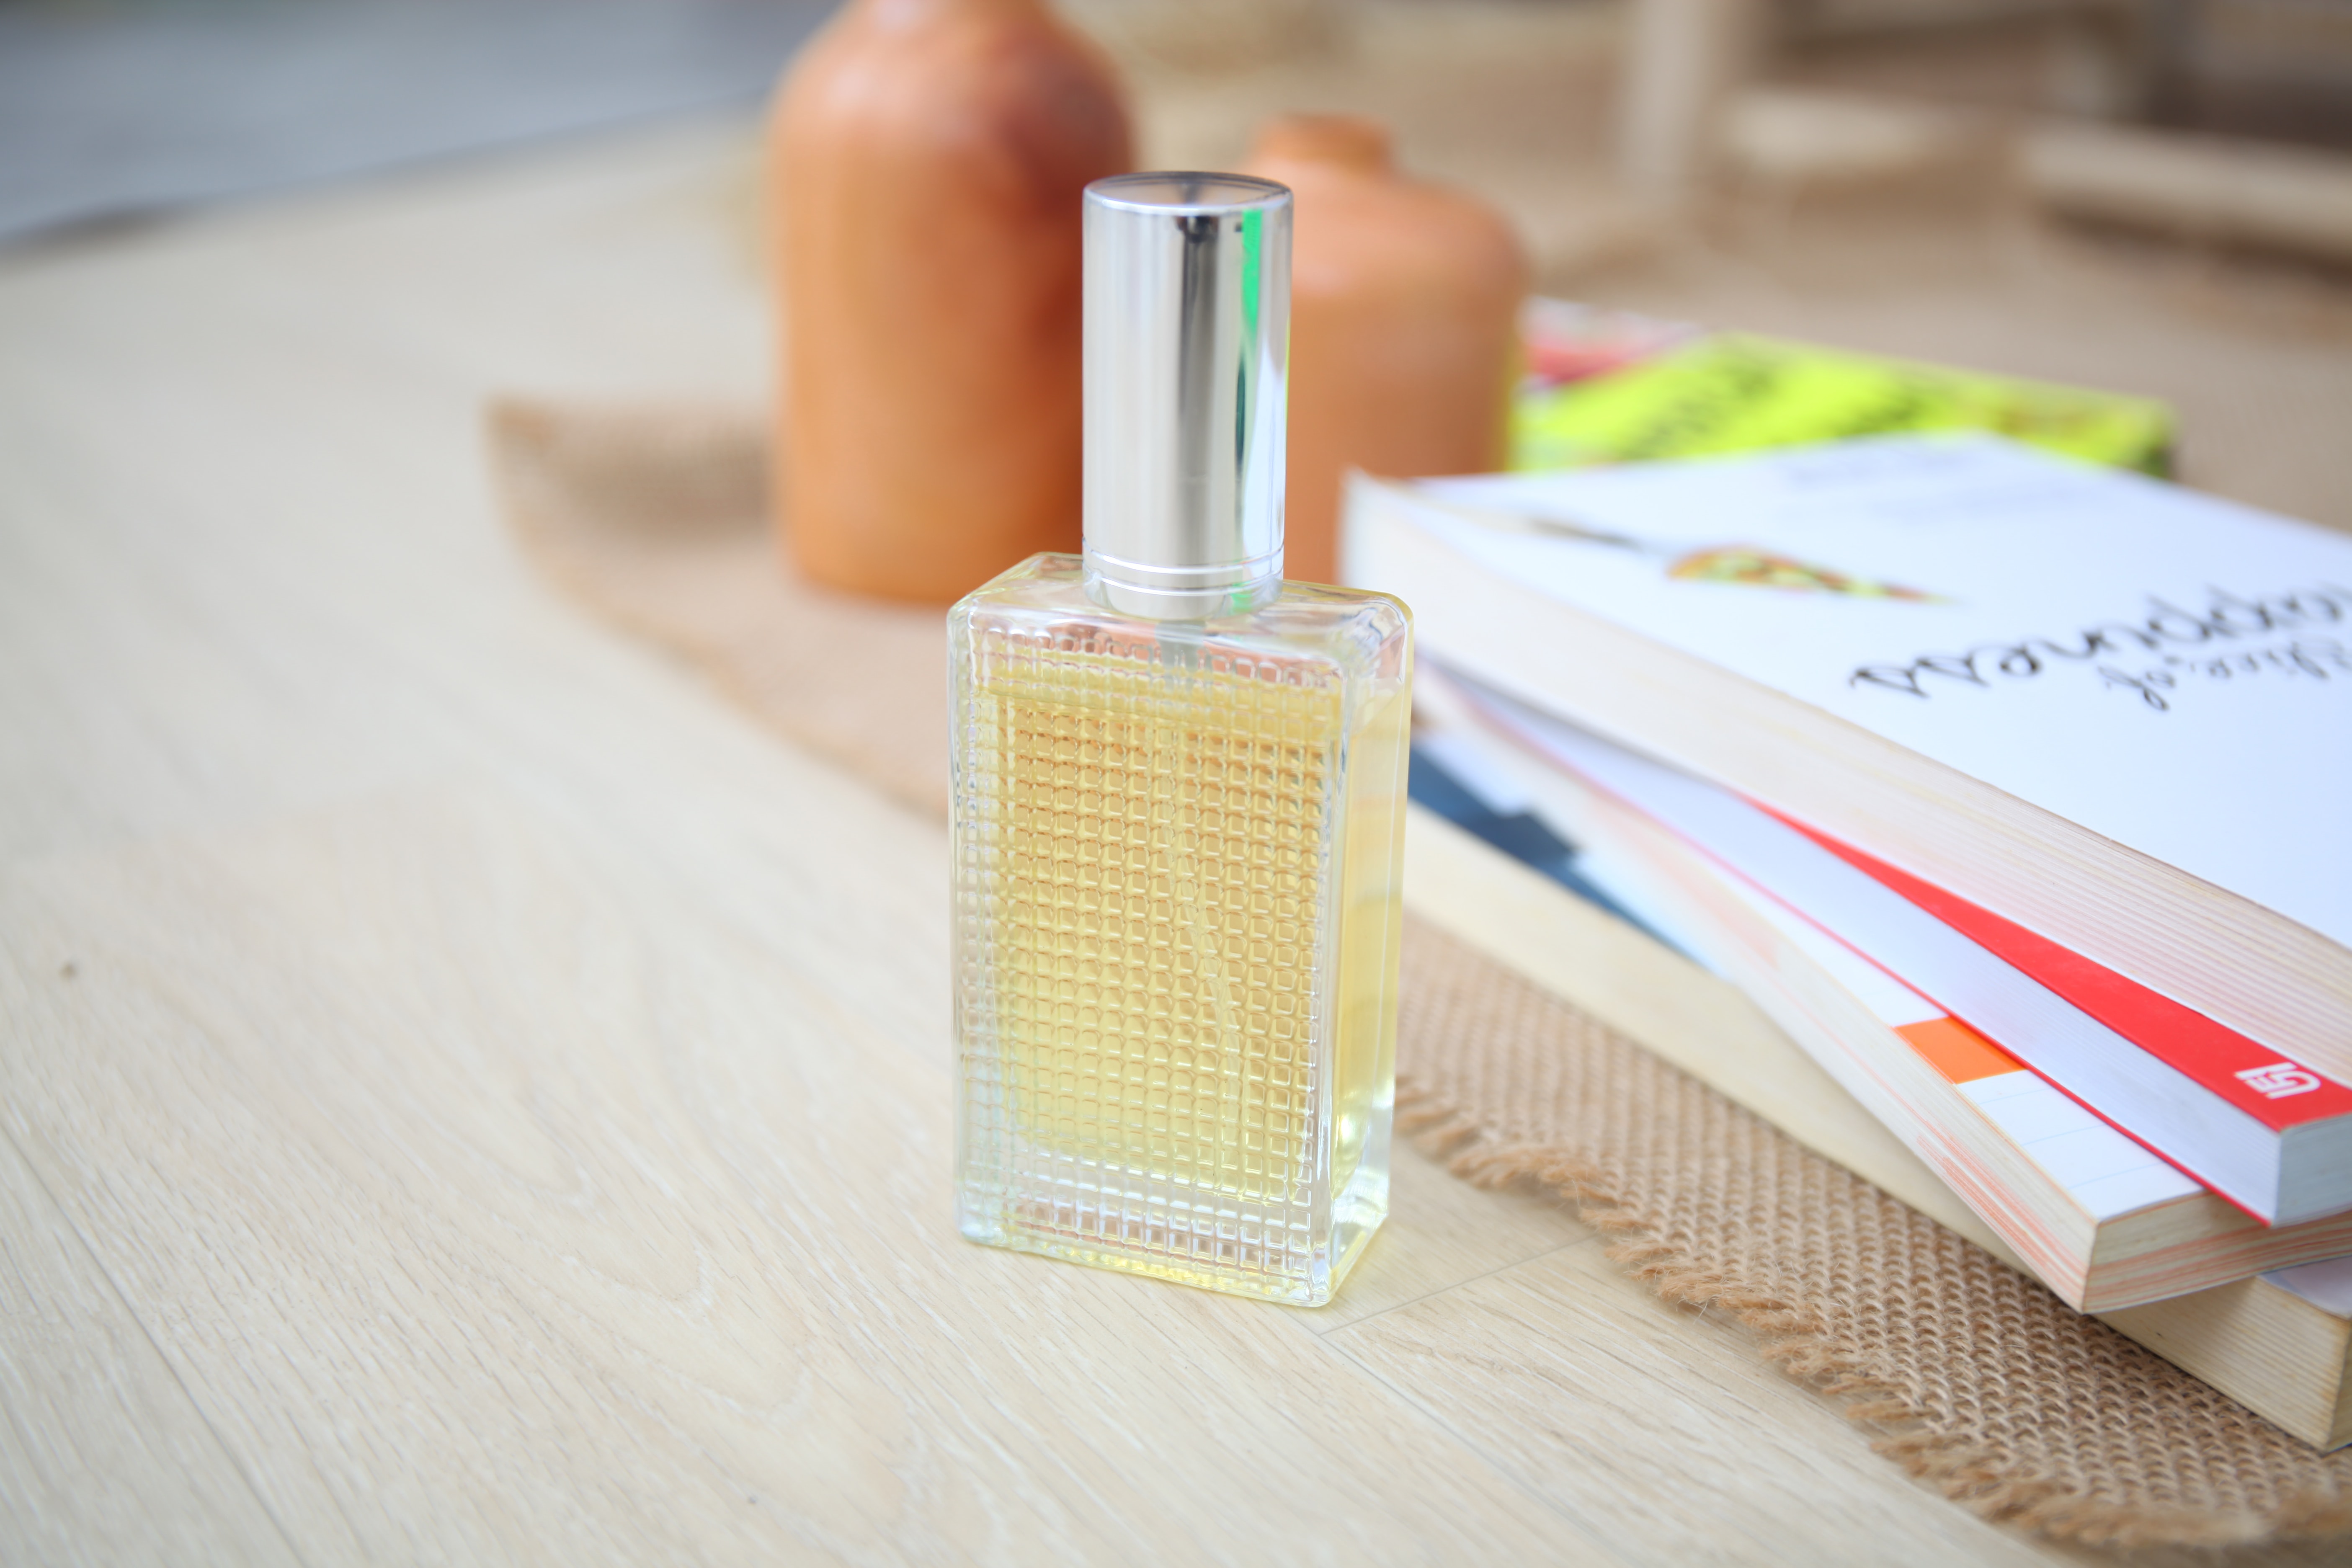 Livre : Une entreprise en France lance un parfum qui sent le papier